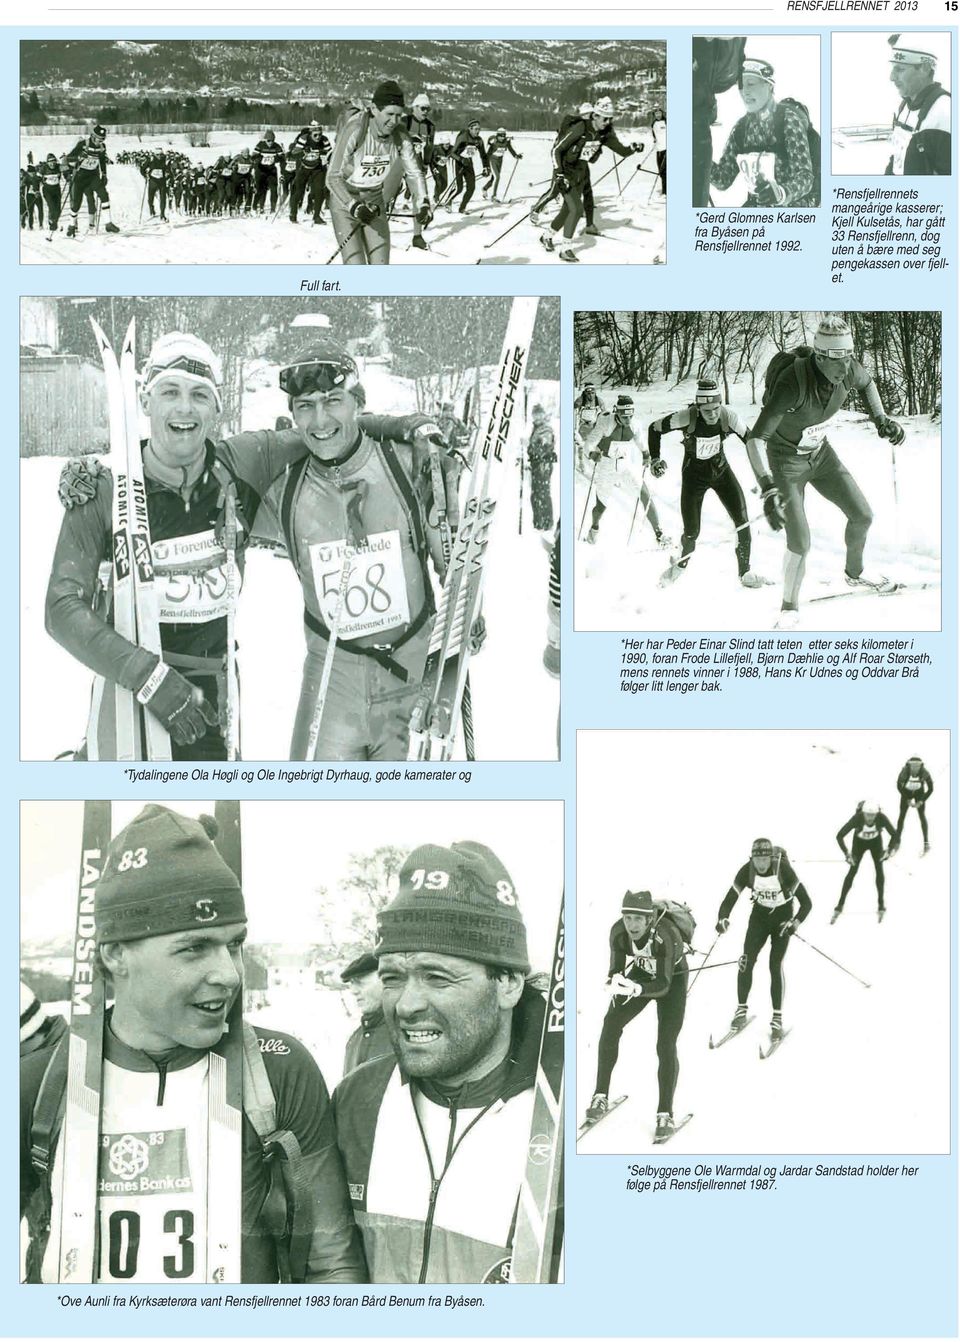 *Her har Peder Einar Slind tatt teten etter seks kilometer i 1990, foran Frode Lillefjell, Bjørn Dæhlie og Alf Roar Størseth, mens rennets vinner i 1988, Hans Kr